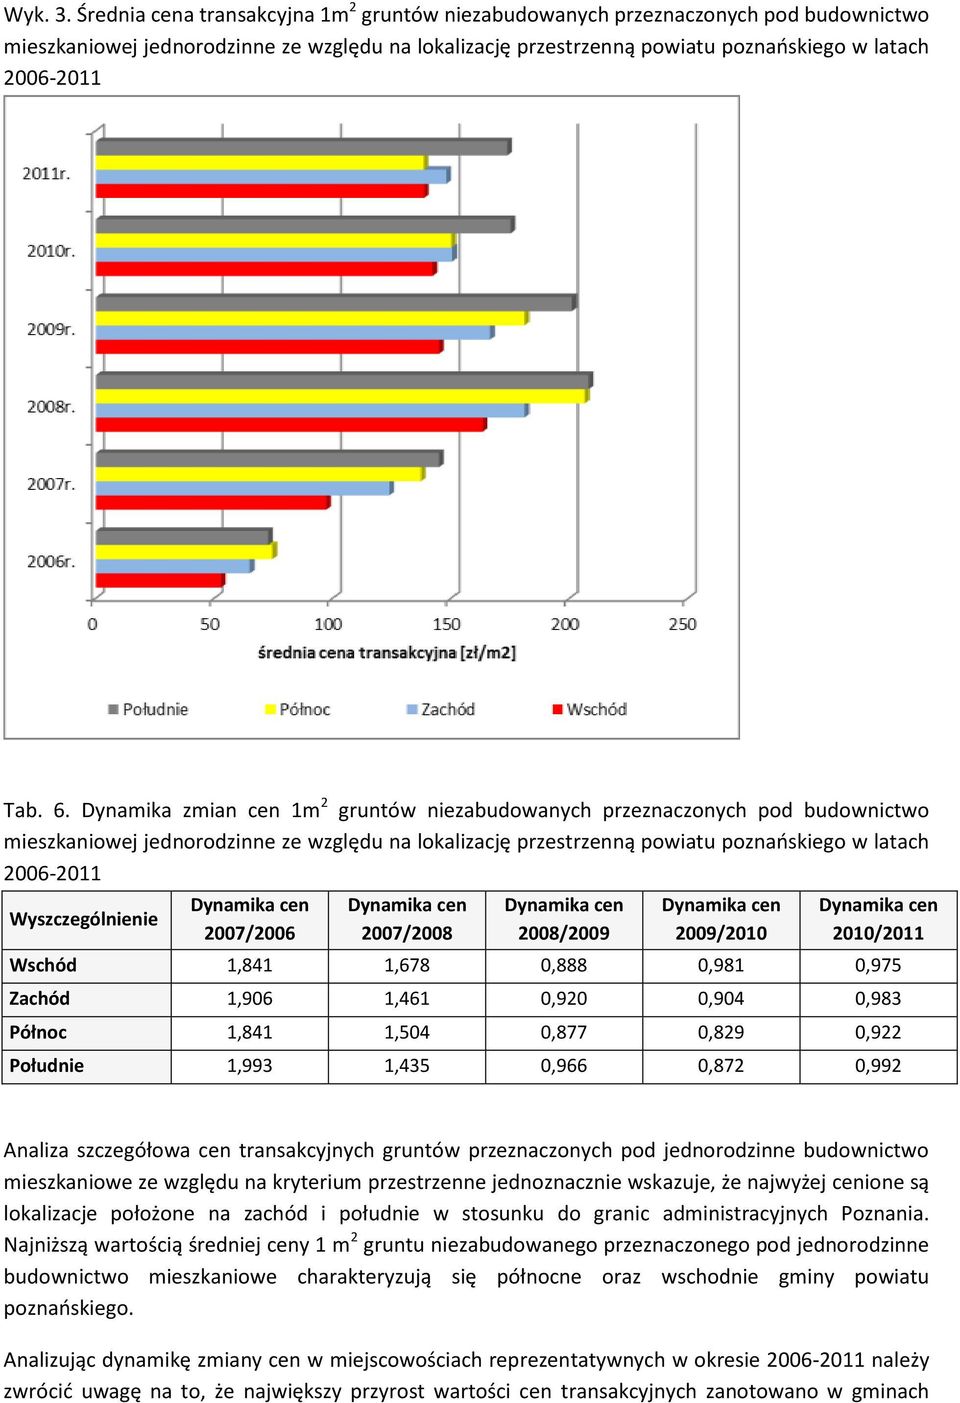 Dynamika zmian cen 1m 2 gruntów niezabudowanych przeznaczonych pod budownictwo mieszkaniowej jednorodzinne ze względu na lokalizację przestrzenną powiatu poznańskiego w latach 2006-2011